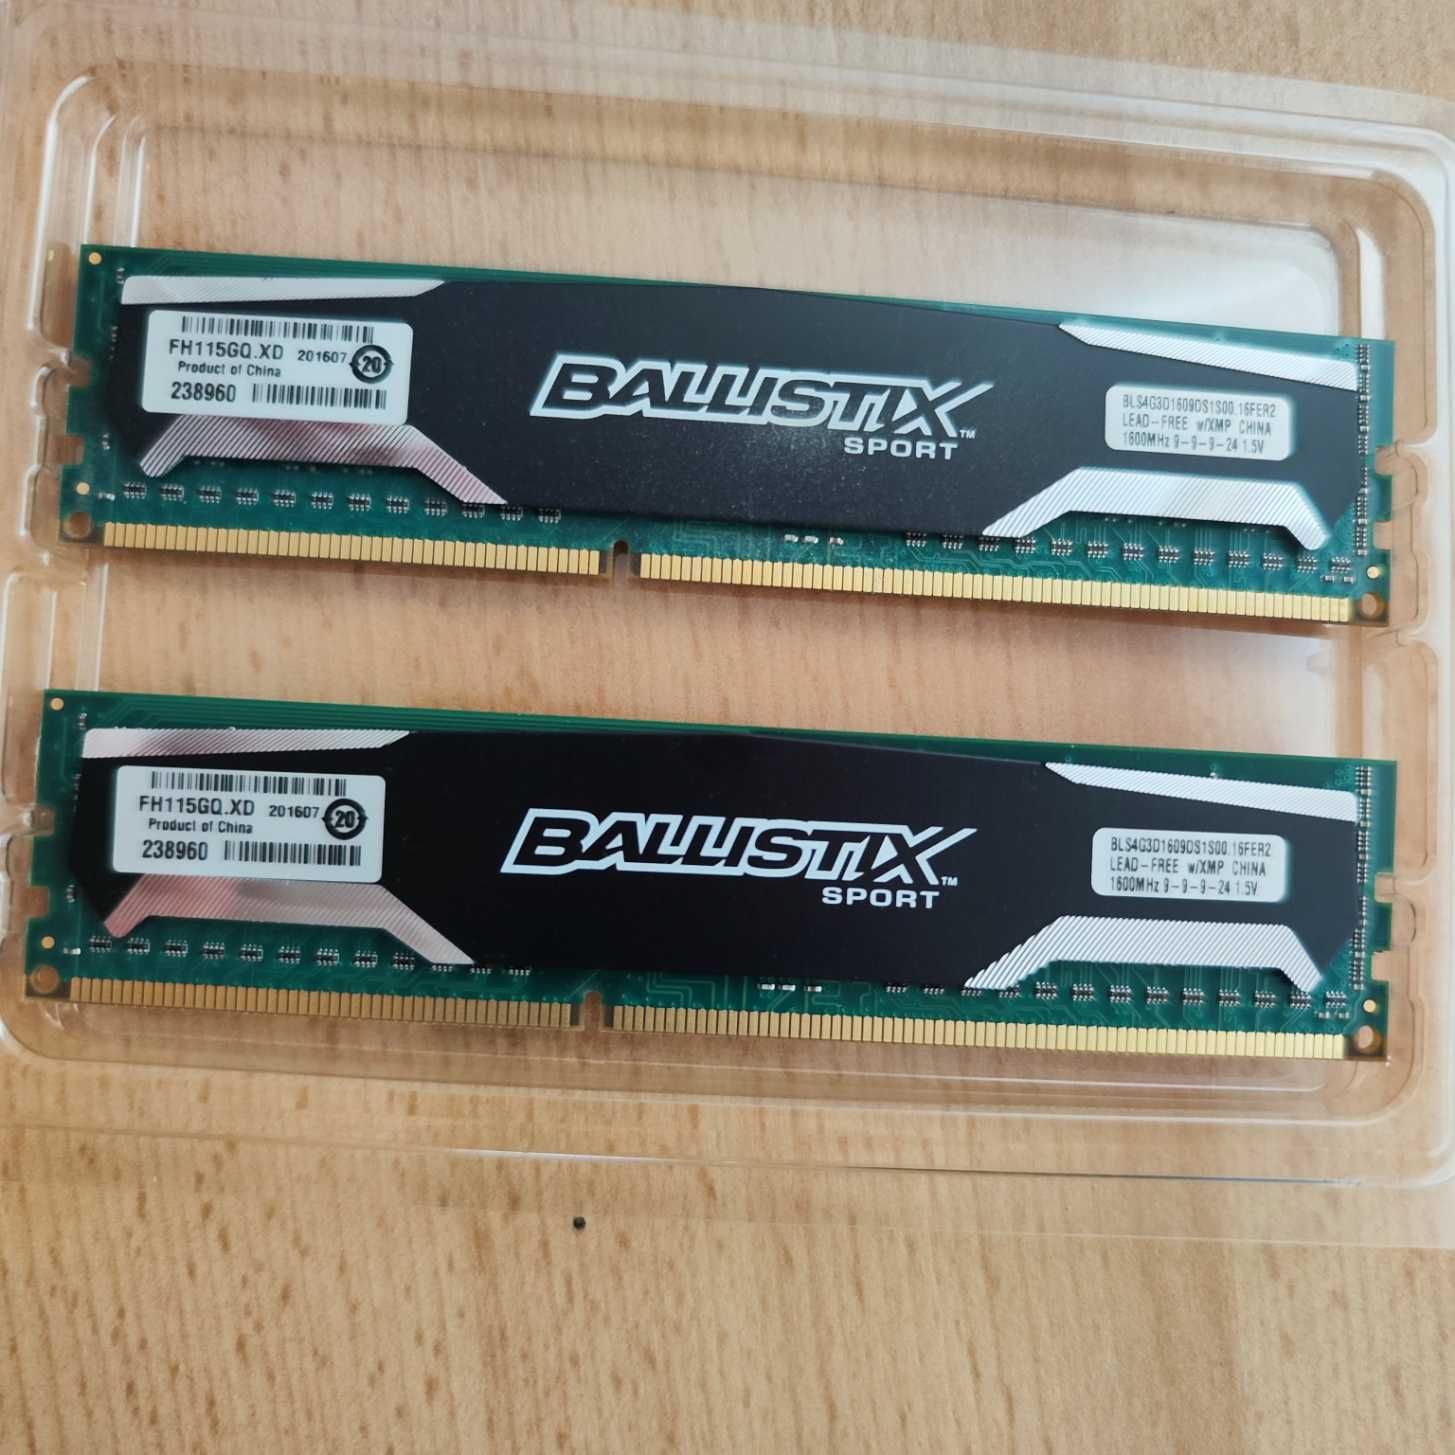 Pamięć RAM DDR3 Ballistix Sport [2 x 4GB] 1600MHz